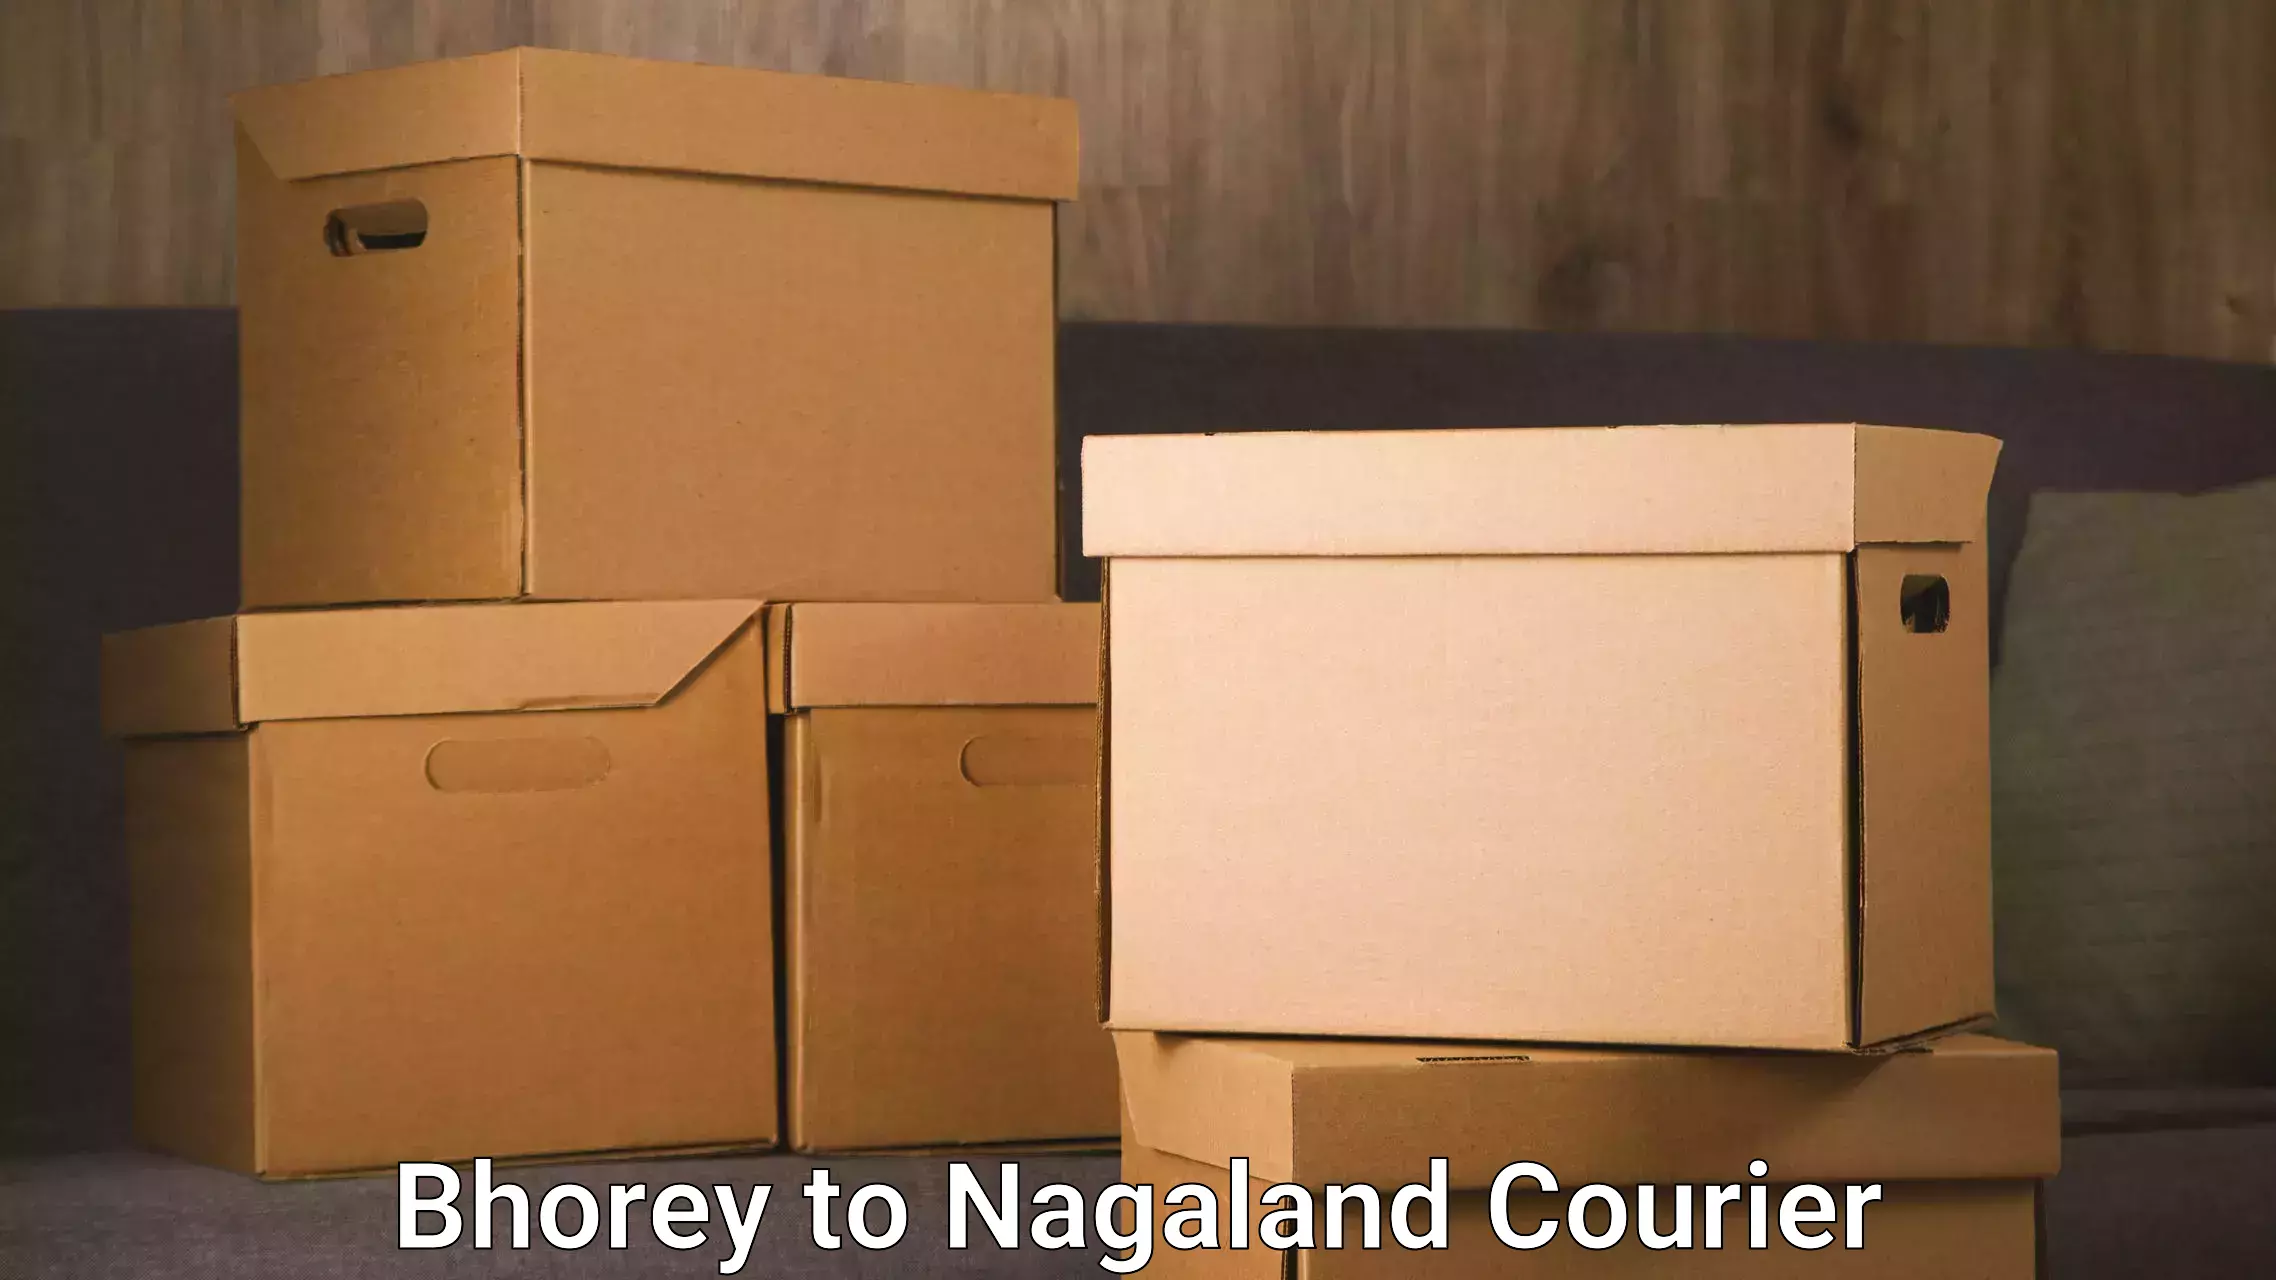 Seamless moving process Bhorey to Nagaland